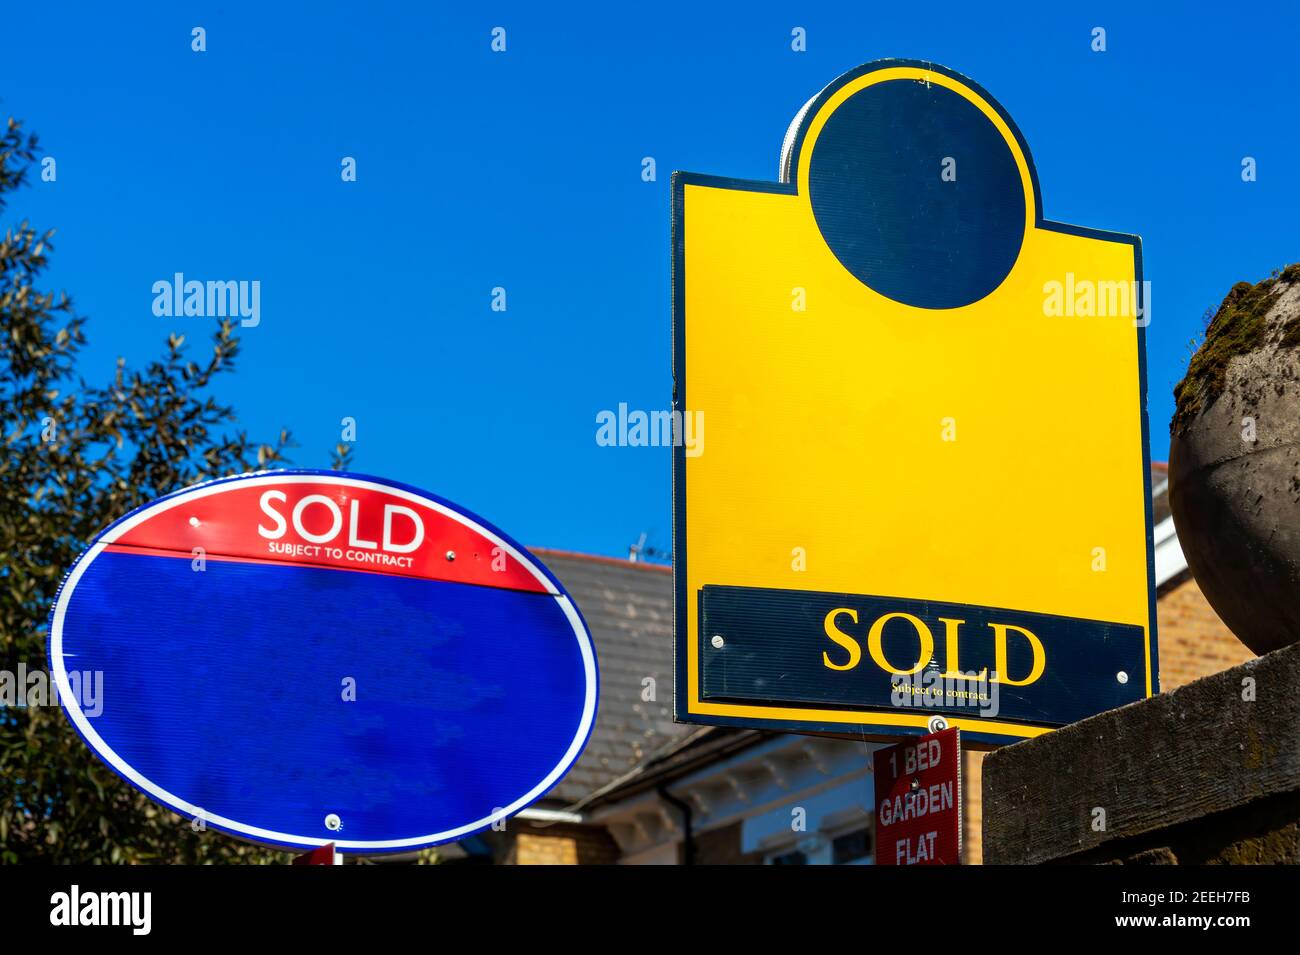 Generisches leeres Immobilienmakler Haus zum Verkauf verkauft Zeichen für den Einsatz während der boomenden Eigenheimbesitzimmobilienmarkt mit Kopieplatz, Stock Foto ima Stockfoto